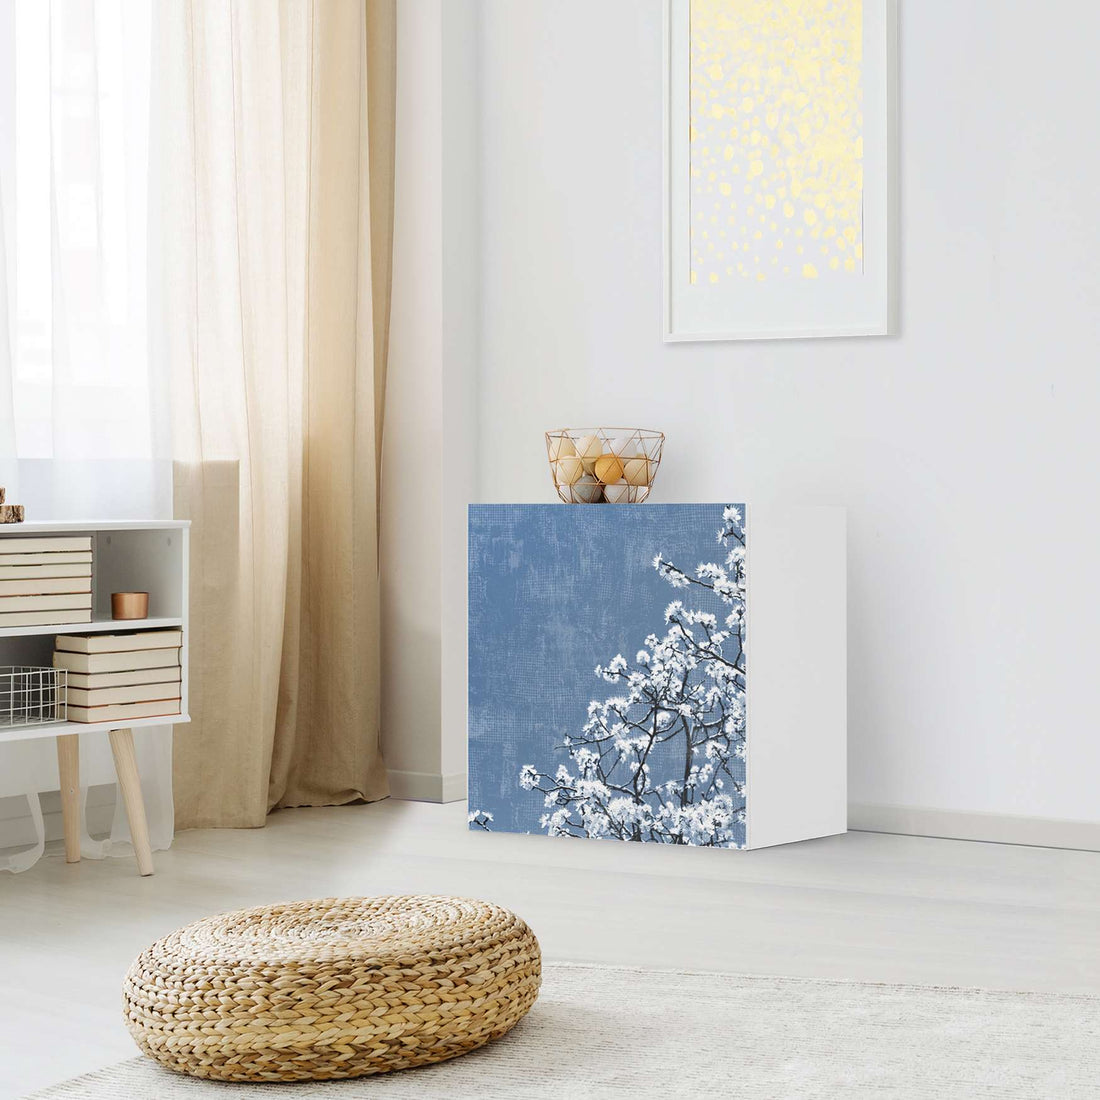 Klebefolie für Möbel Spring Tree - IKEA Besta Regal 1 Türe - Wohnzimmer